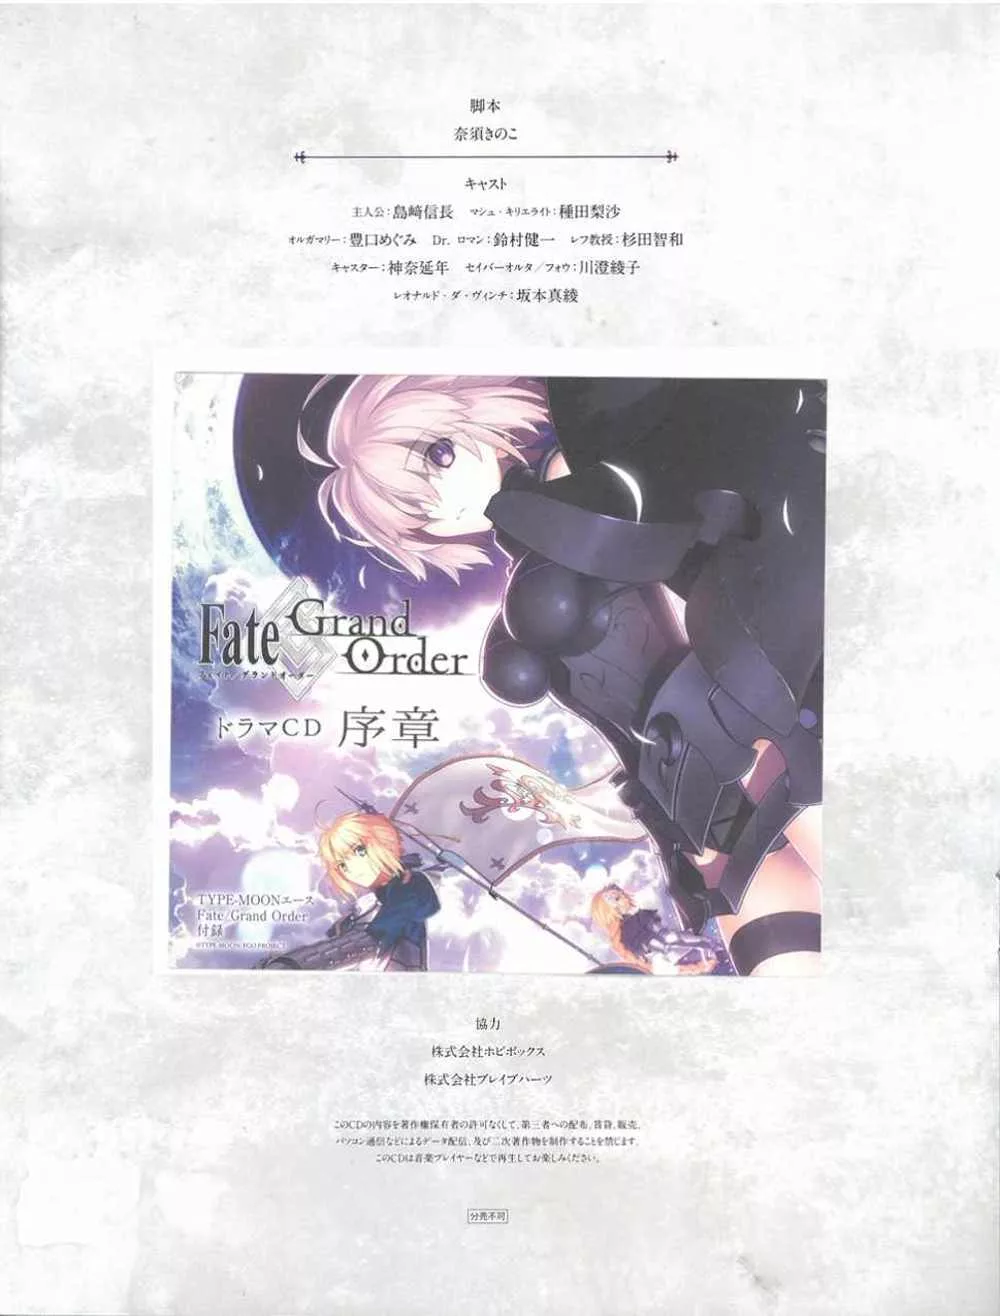 【特別附錄】Fate/Grand Order廣播劇CD序章